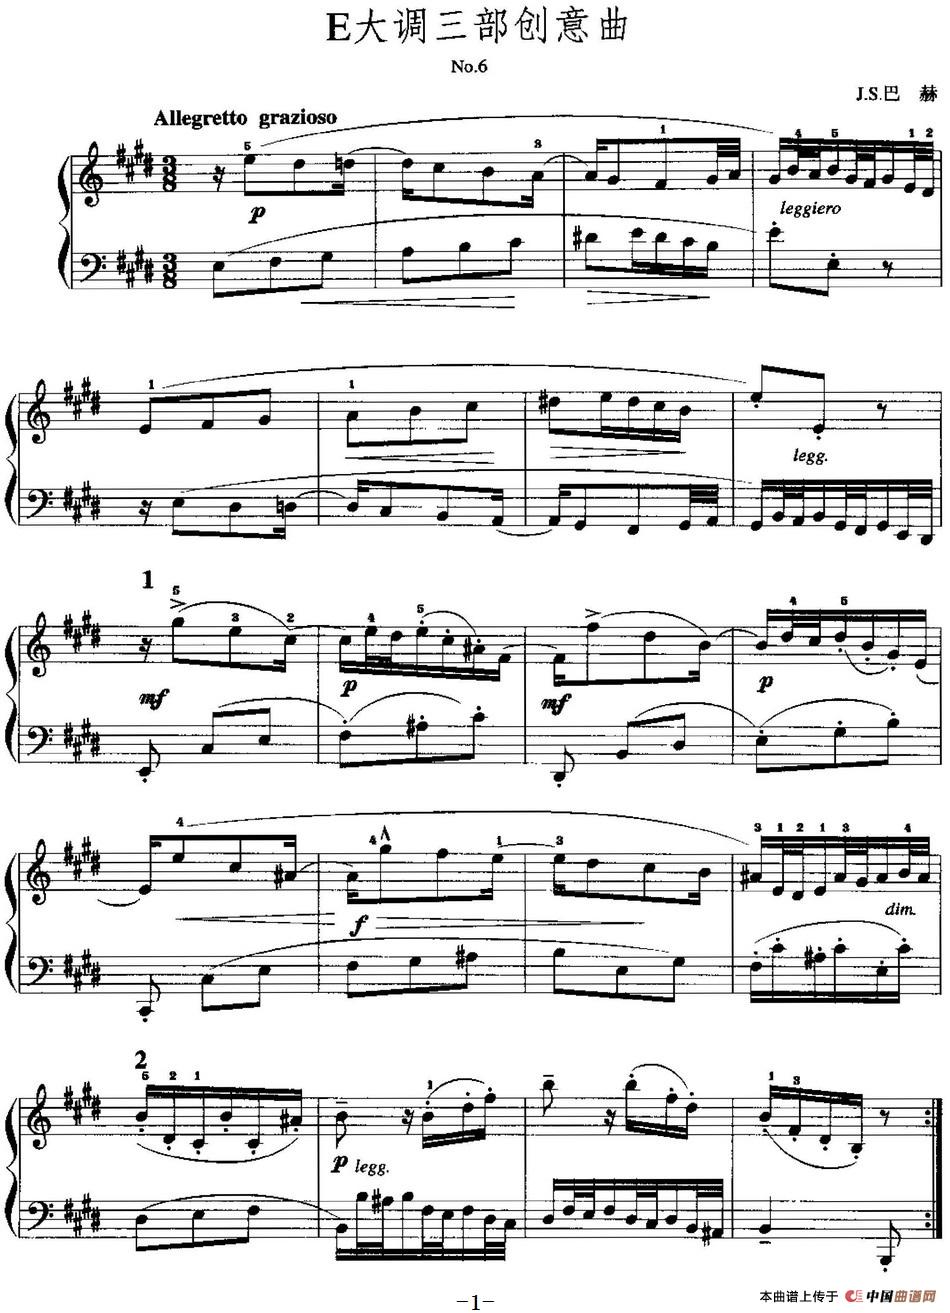 手风琴复调作品：E大调三部创意曲手风琴谱（线简谱对照、带指法版）